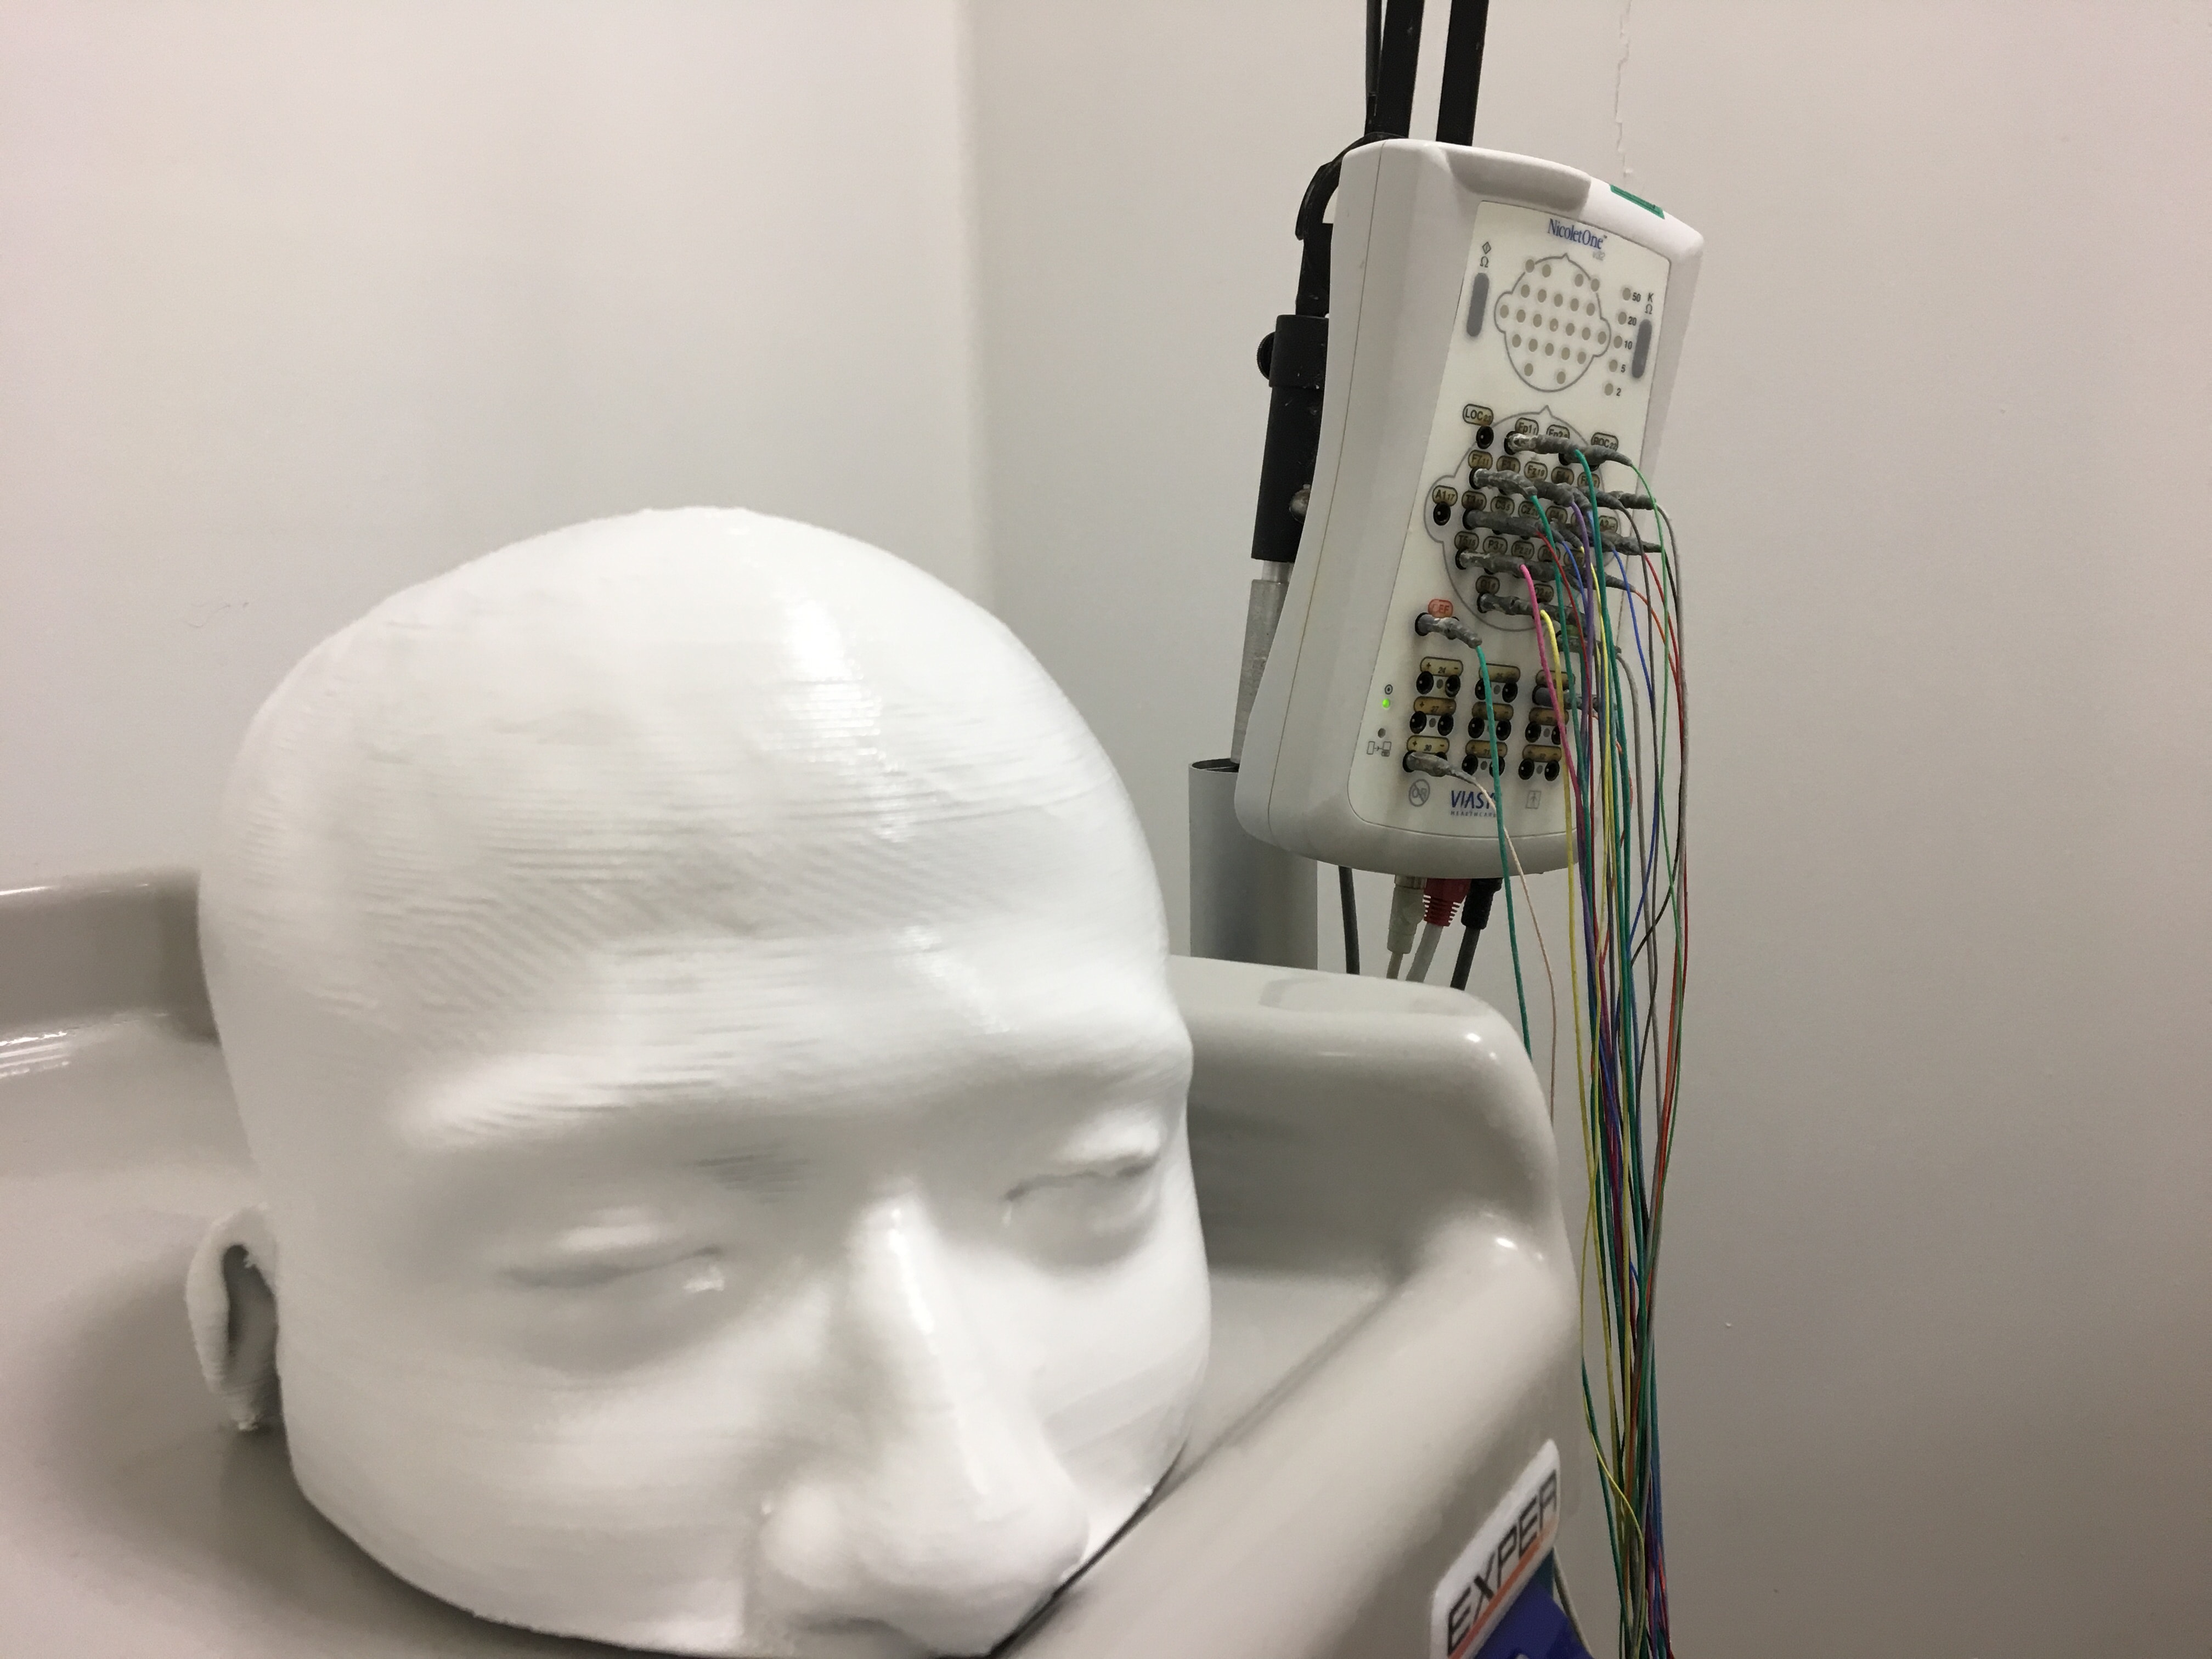 إنتجت جامعة الشرق الأدنى في مختبر 3D نموذج الجمجمة البشرية من خلال طريقة الطباعة ثلاثية الأبعاد